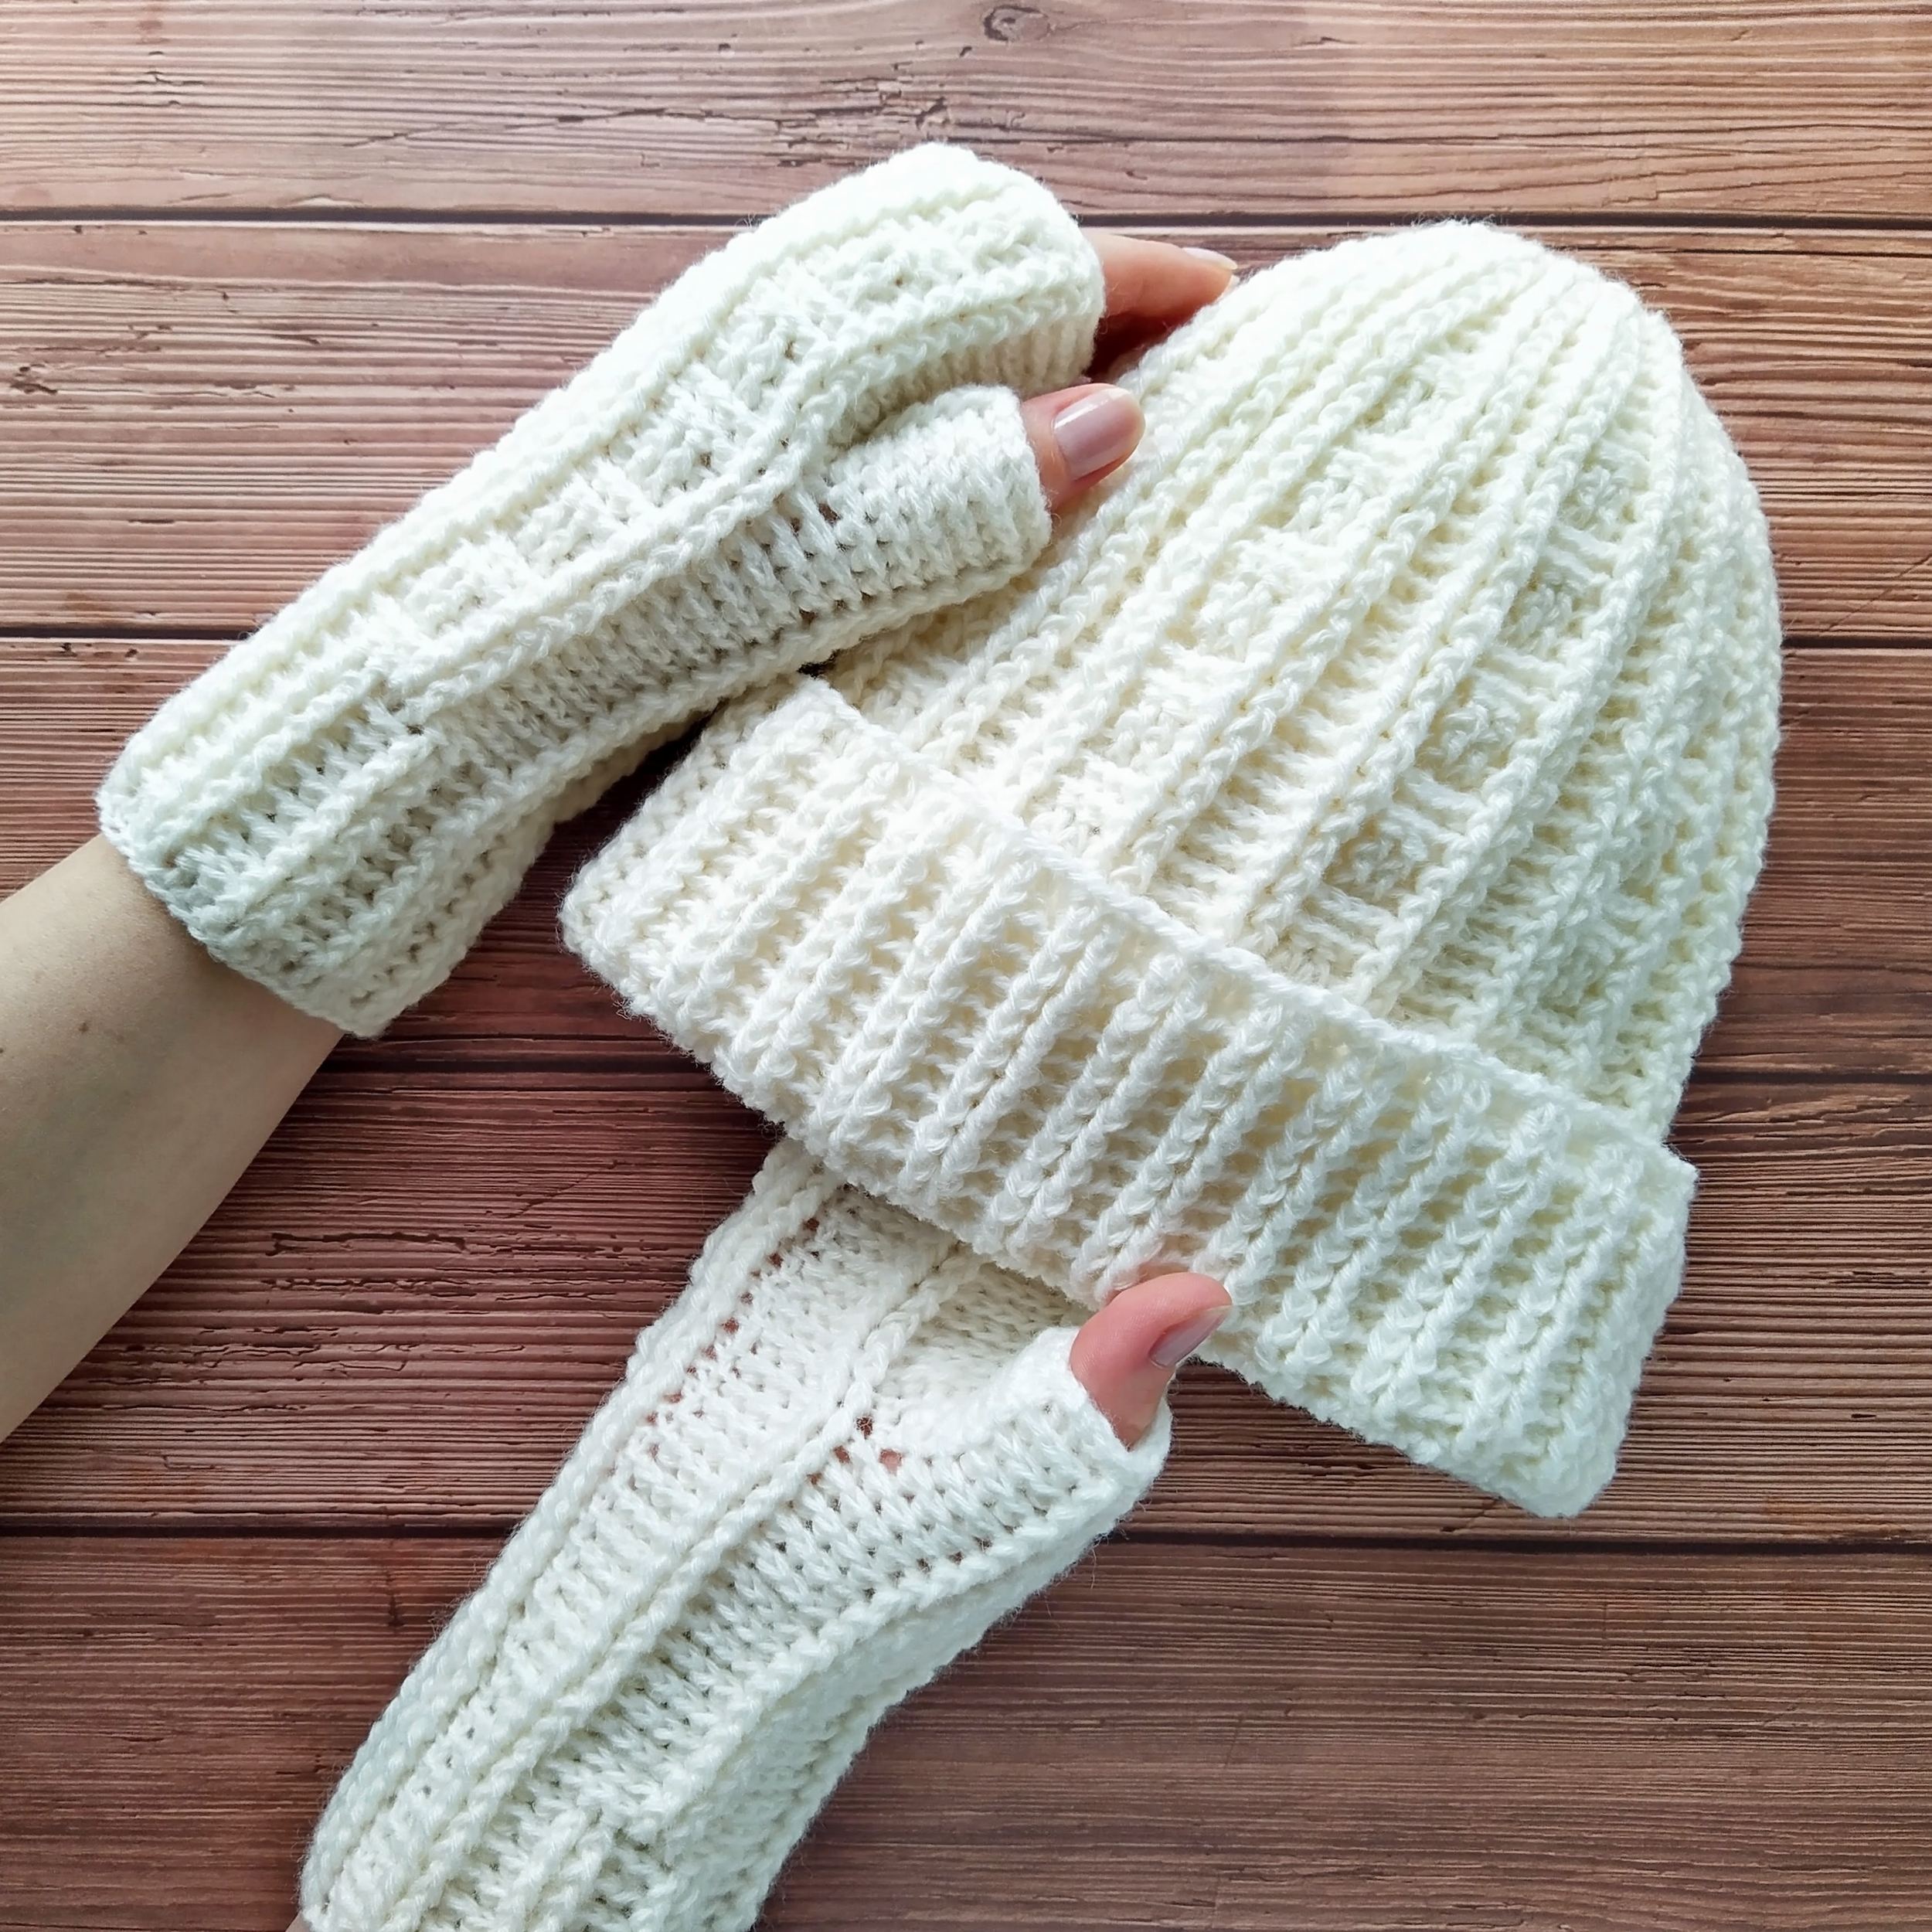 Quick & Easy Crochet Fingerless Gloves - FREE Pattern + Video